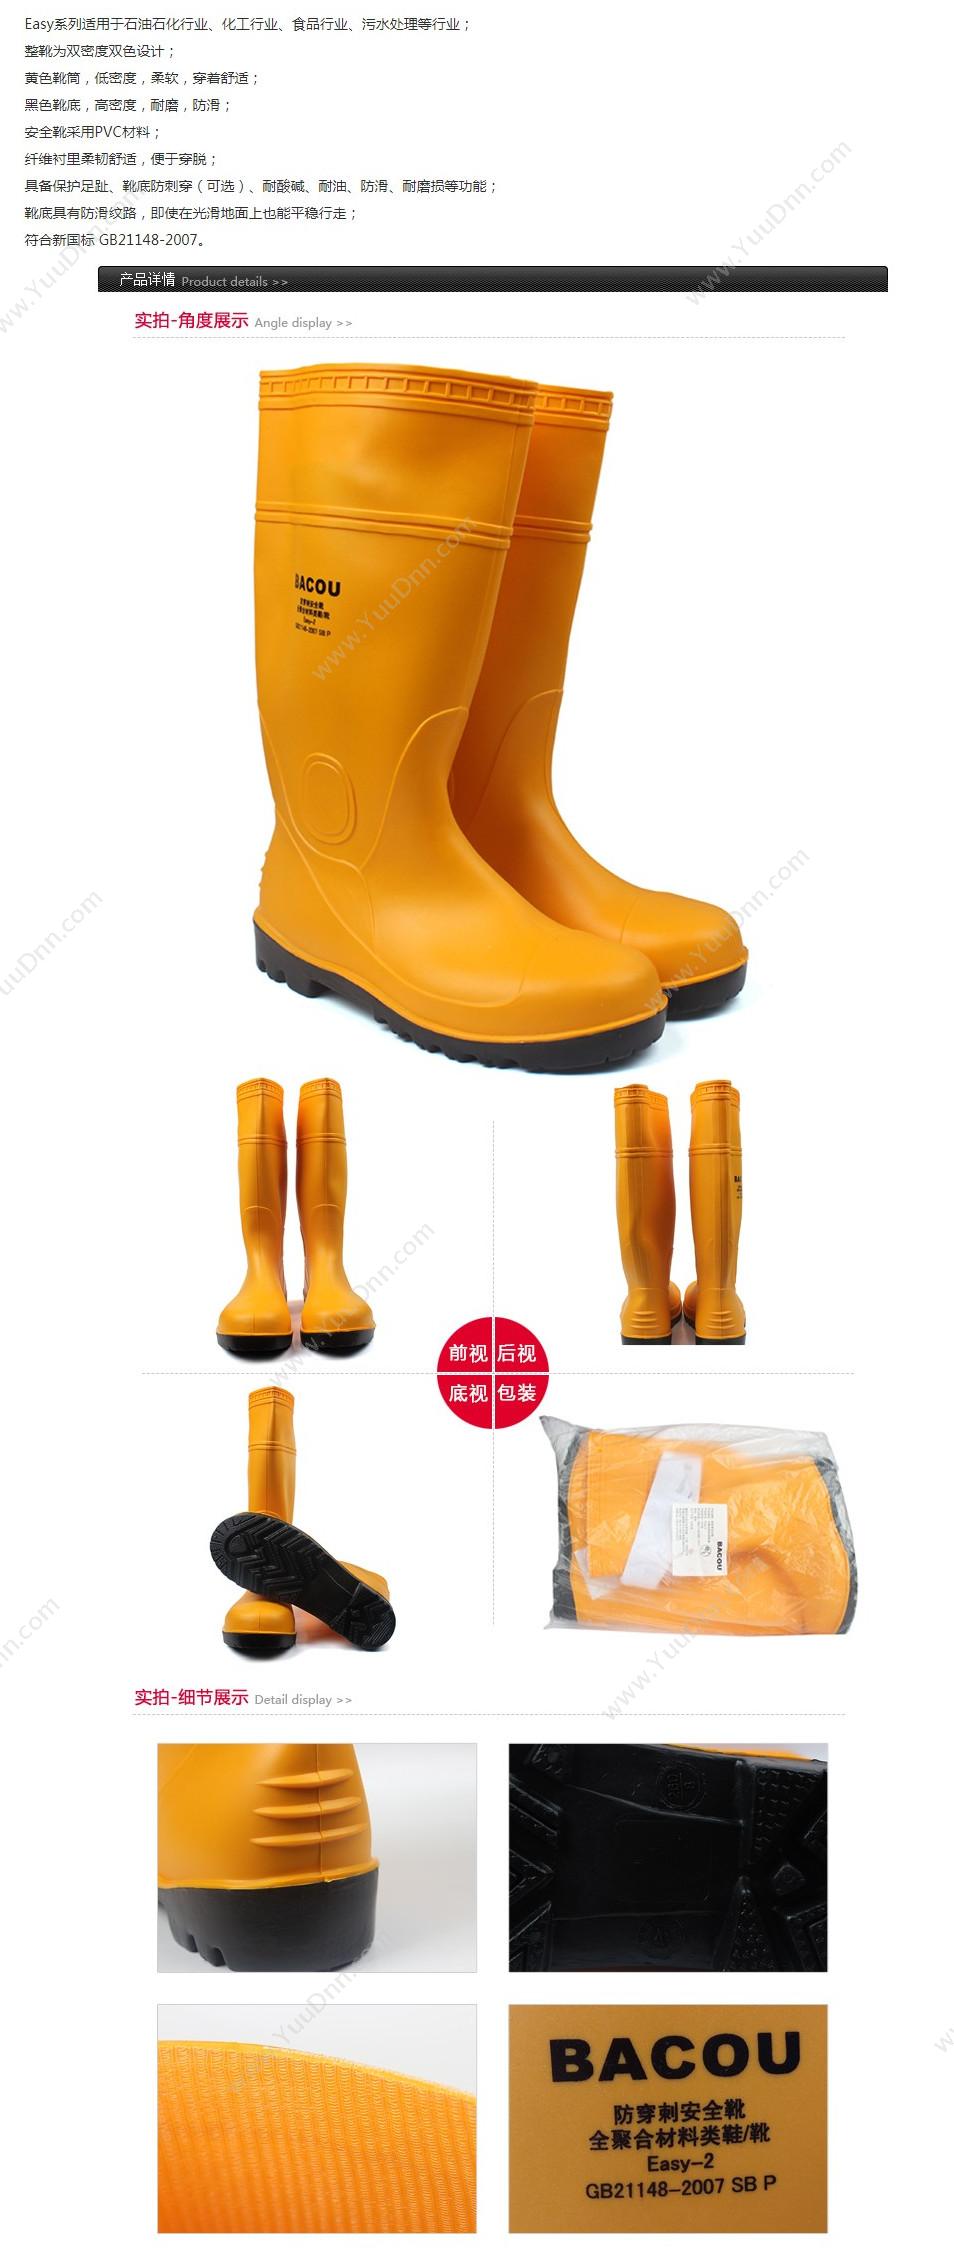 霍尼韦尔 Honeywell 75707 PVC 安全靴Easy 轻型 43 橘黄色 10双/箱 轻便鞋安全靴